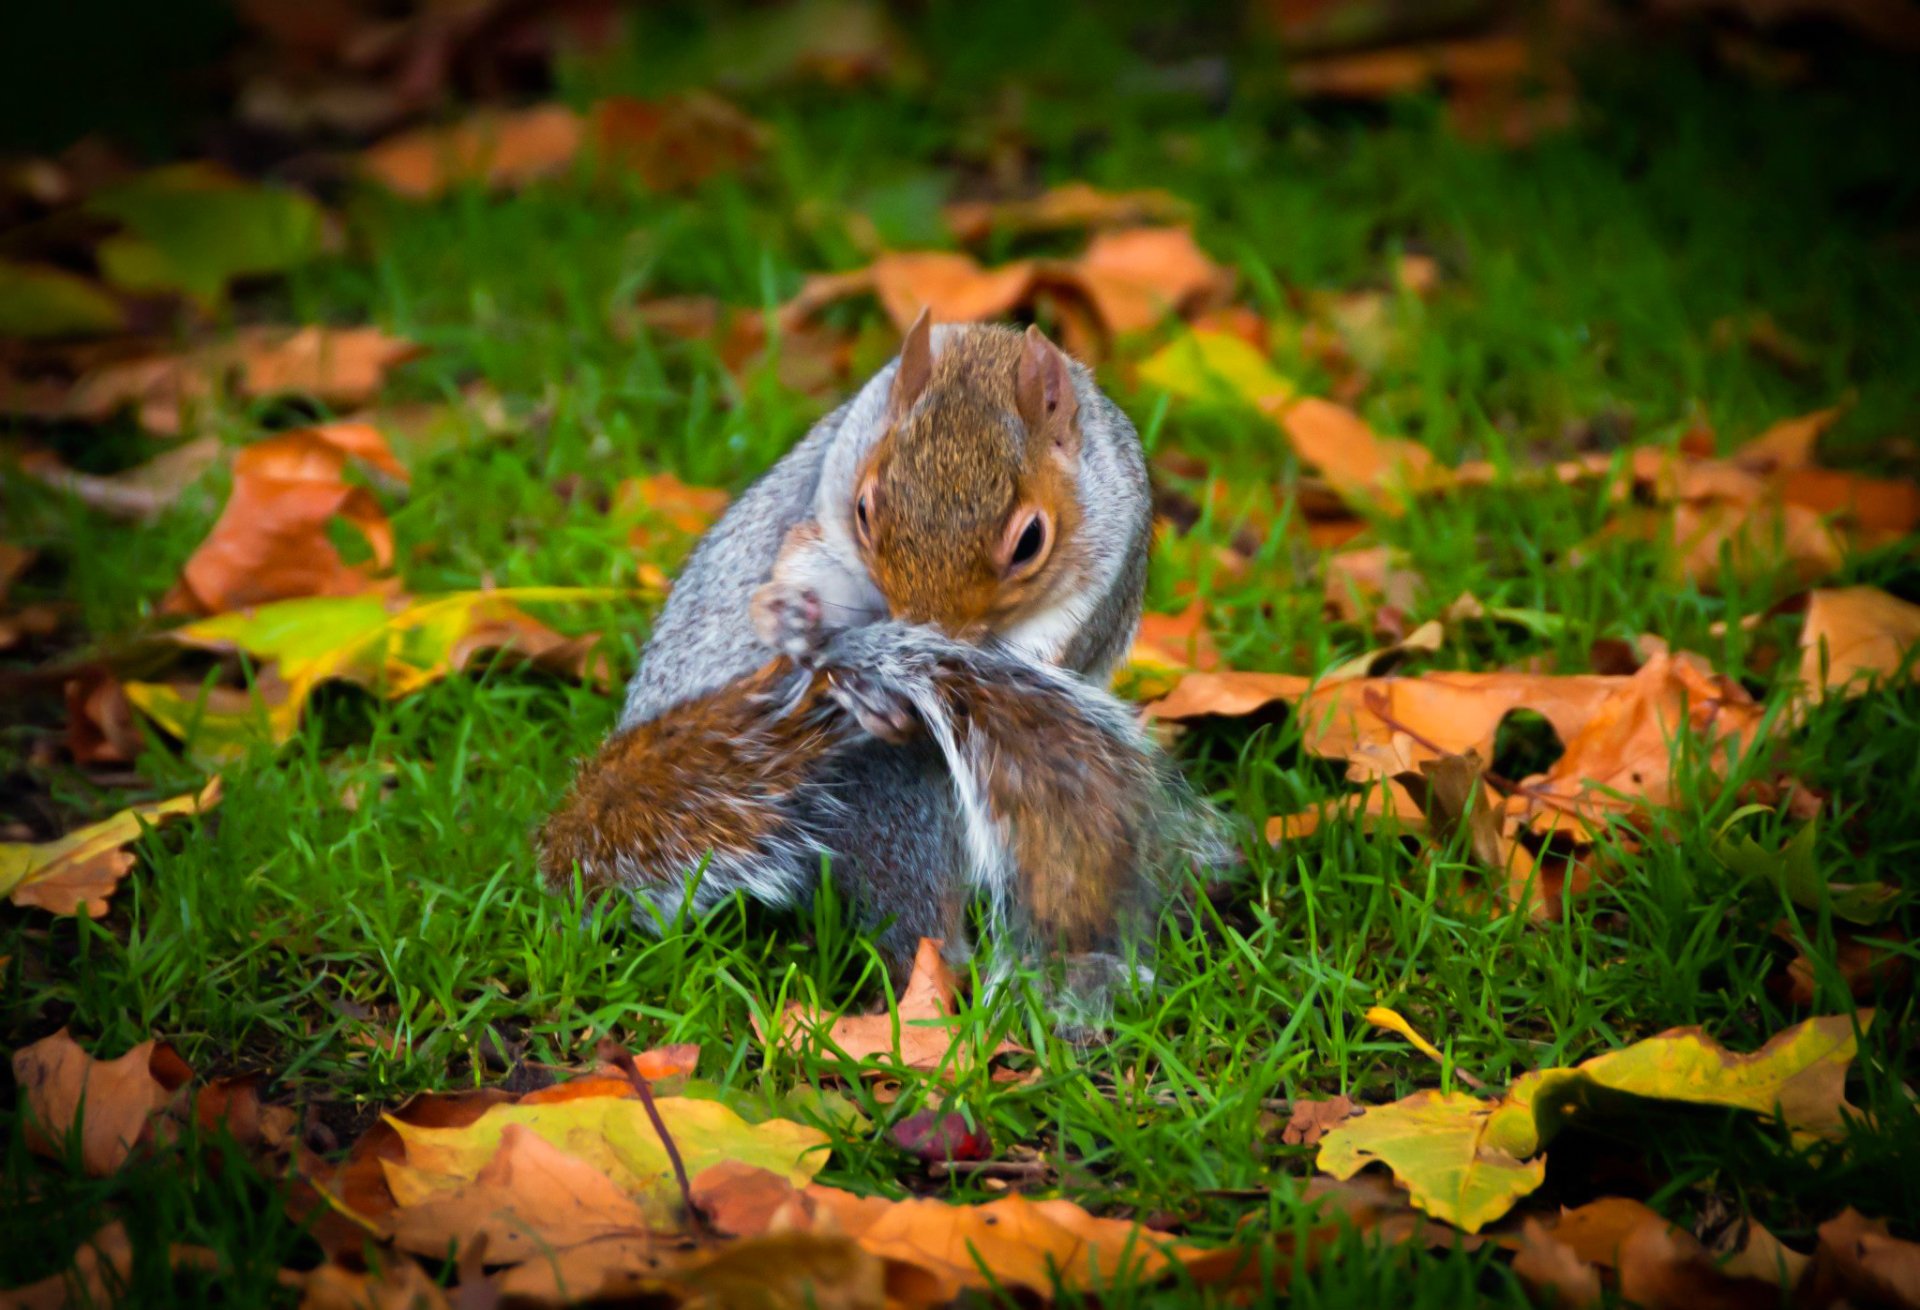 Hyde Park Squirrel 3 by BubbaTheGecko